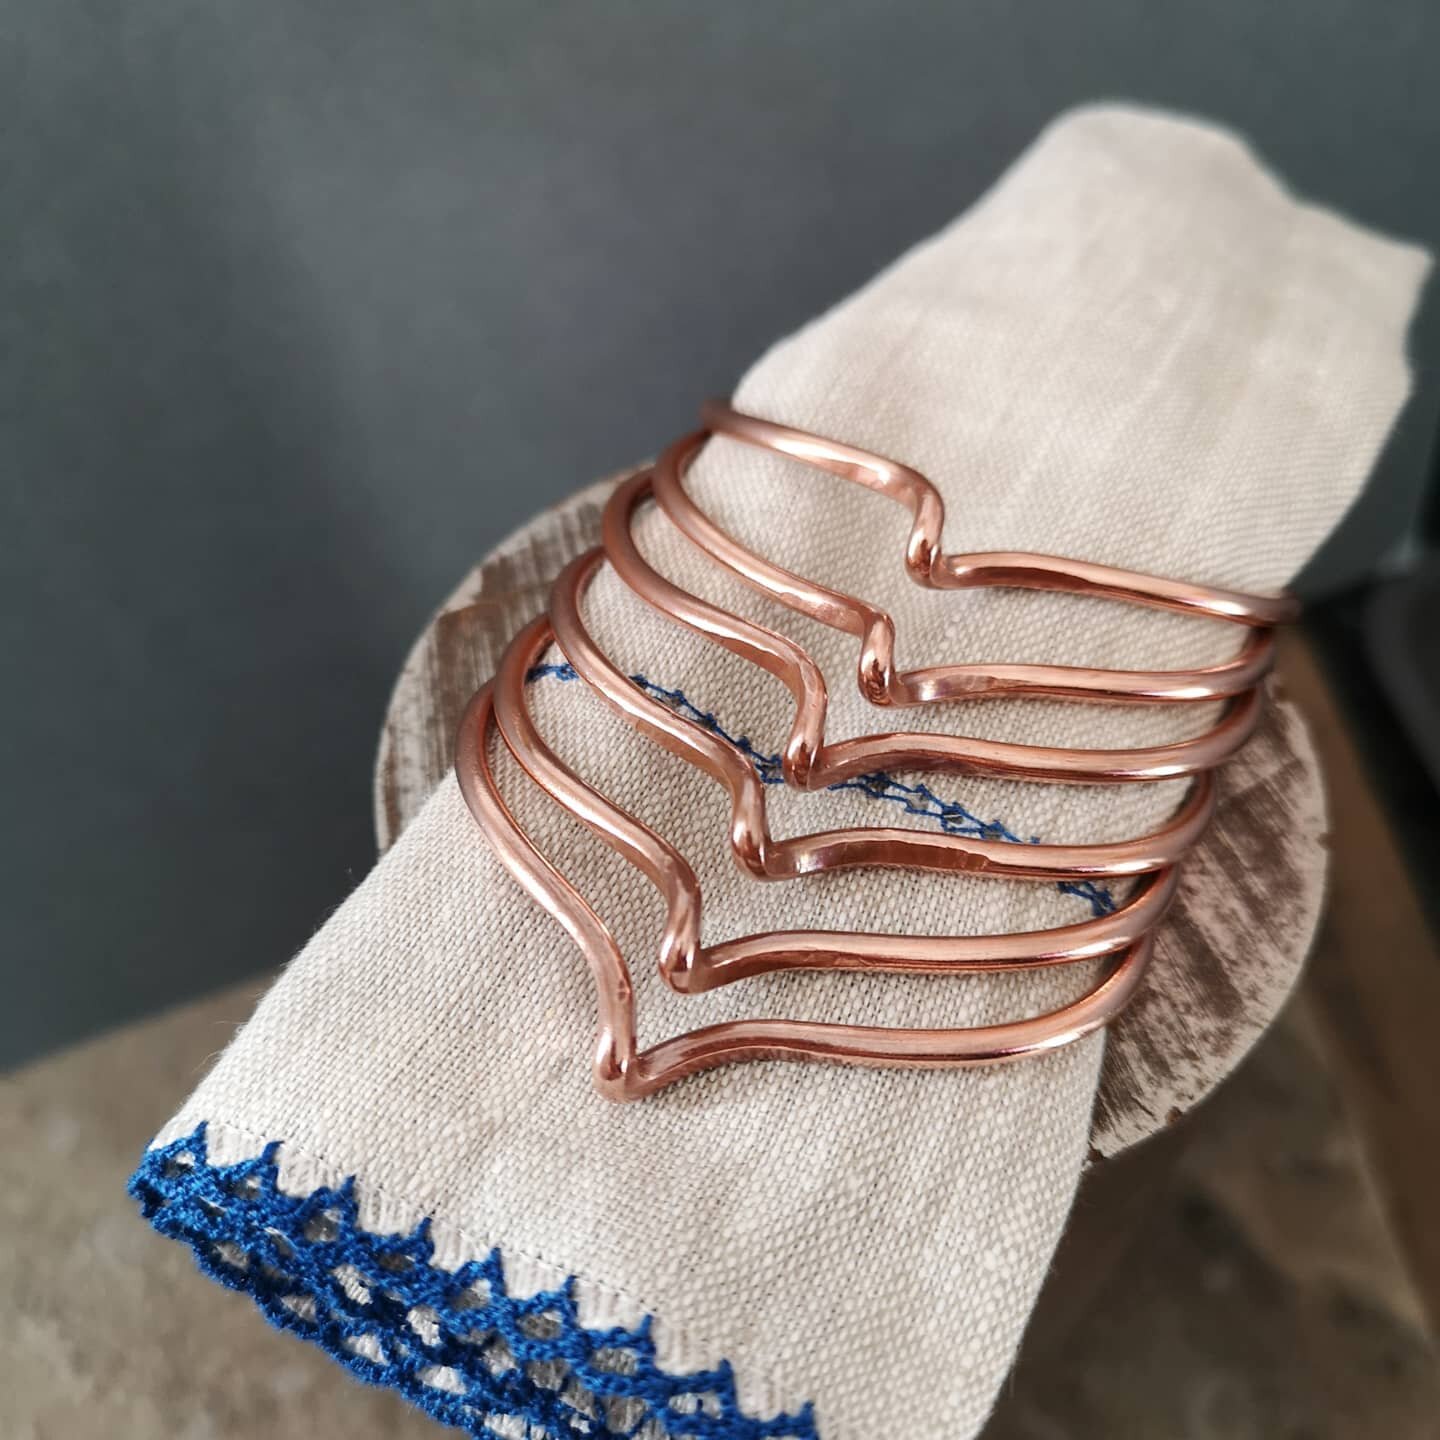 Simple copper cuff bracelets.

#valmontstudio #copper #bracelet #cuff #maker #metalsmith #madeinleeds